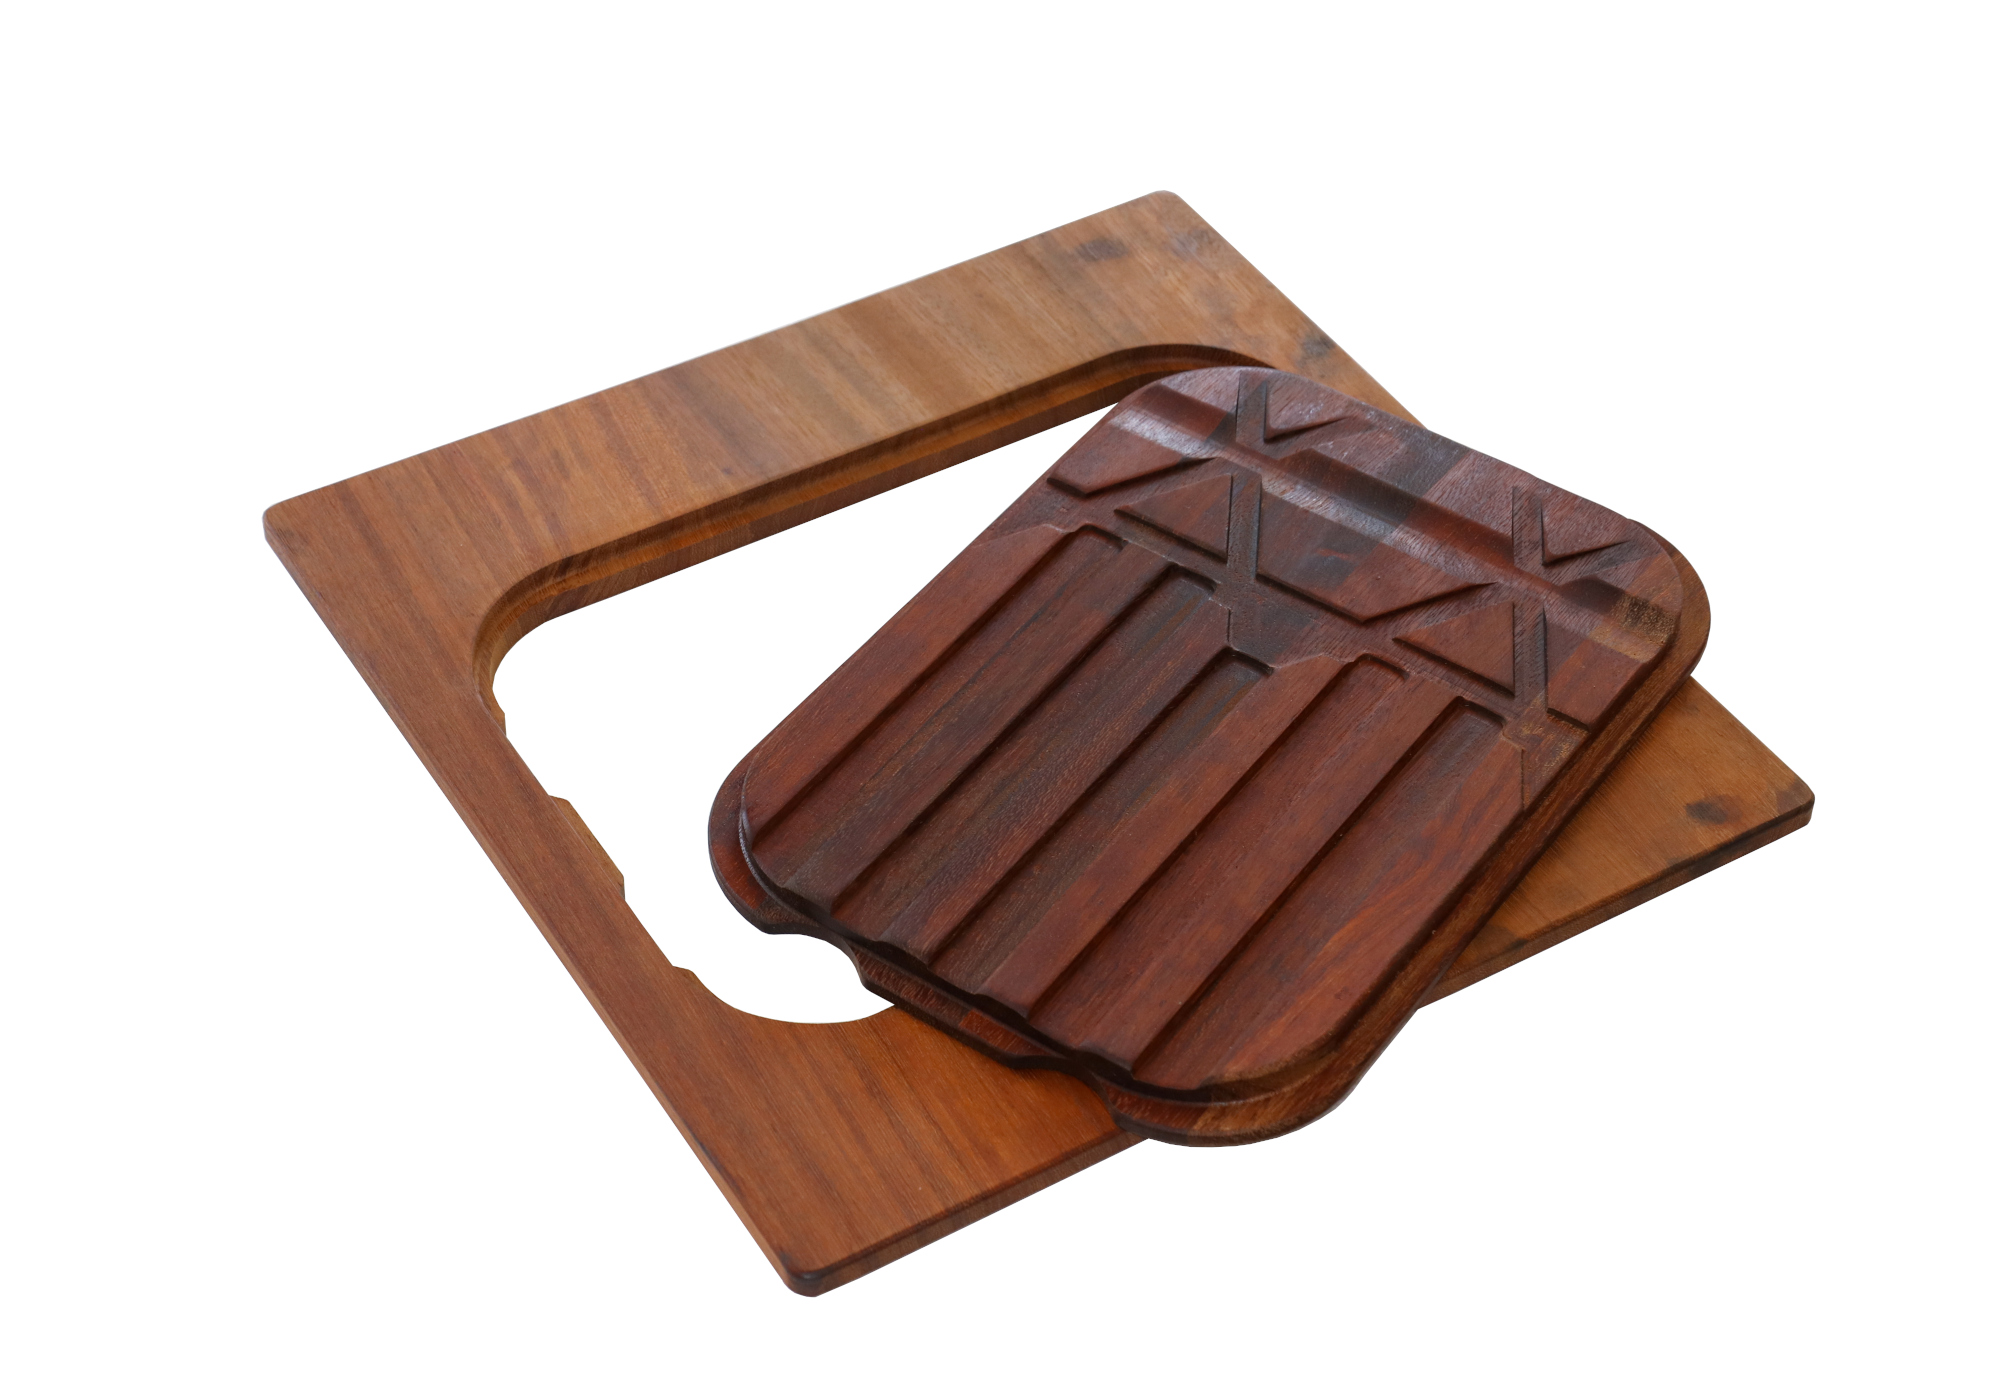 Iroko-wood twin chopping board